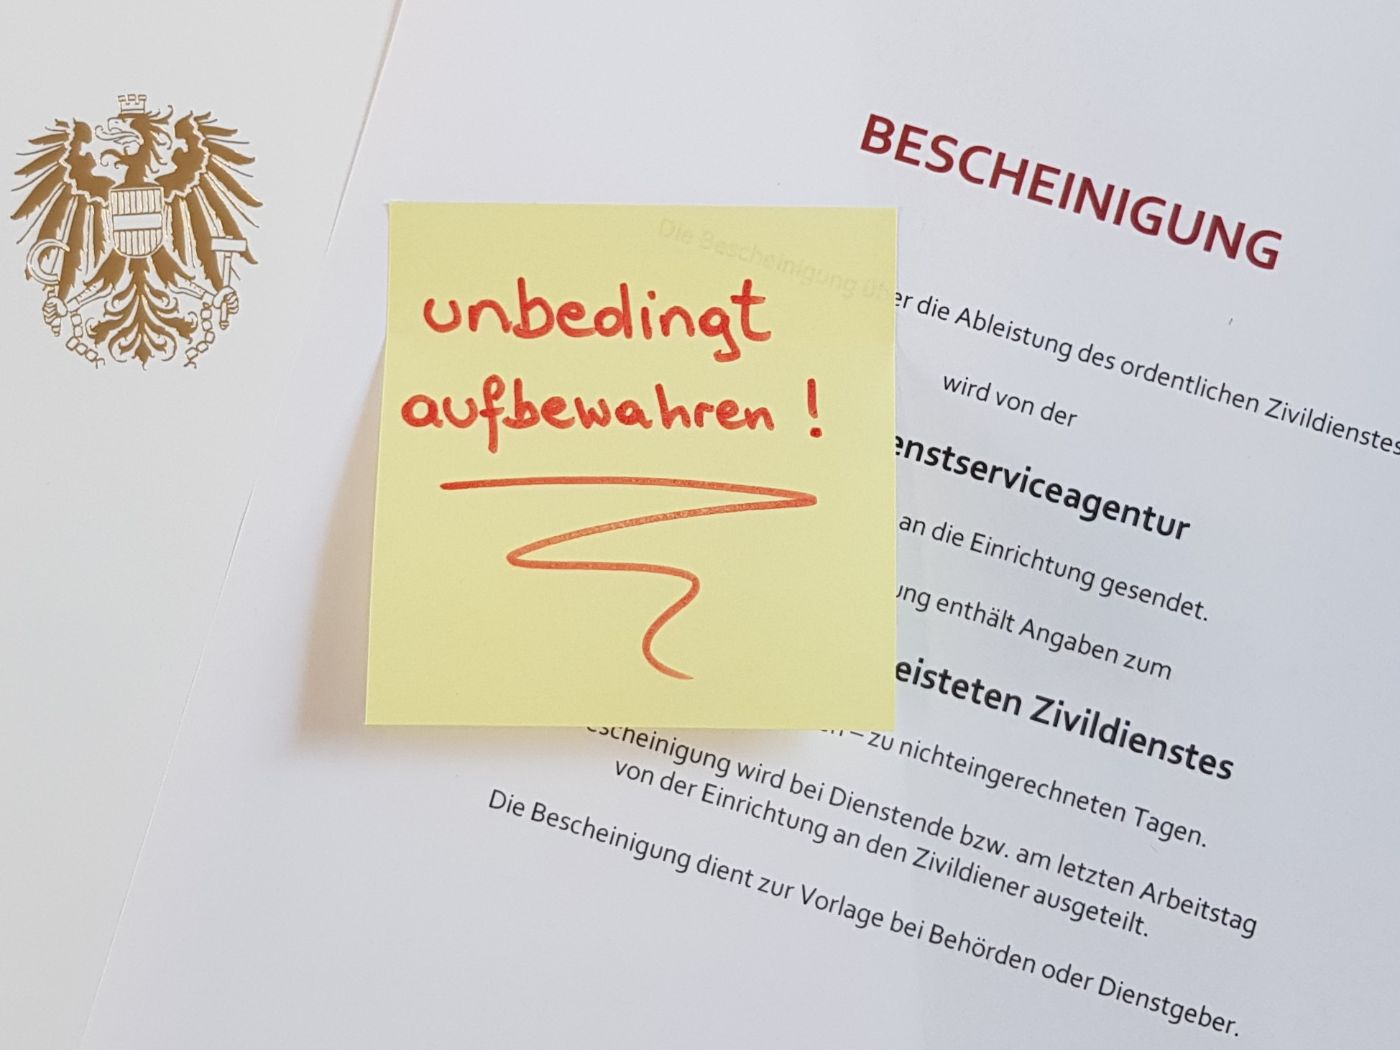 Ausschnitt eines Muster-Dokuments mit dem Titel „Bescheinigung“. Auf diesem klebt ein gelbes Post-It mit dem handgeschriebenen Aufdruck „unbedingt aufbewahren!“. Links im Bild befindet sich ein Ausschnitt einer Mappe, auf der der österreichische Bundesadler in der Farbe Gold aufgedruckt ist.